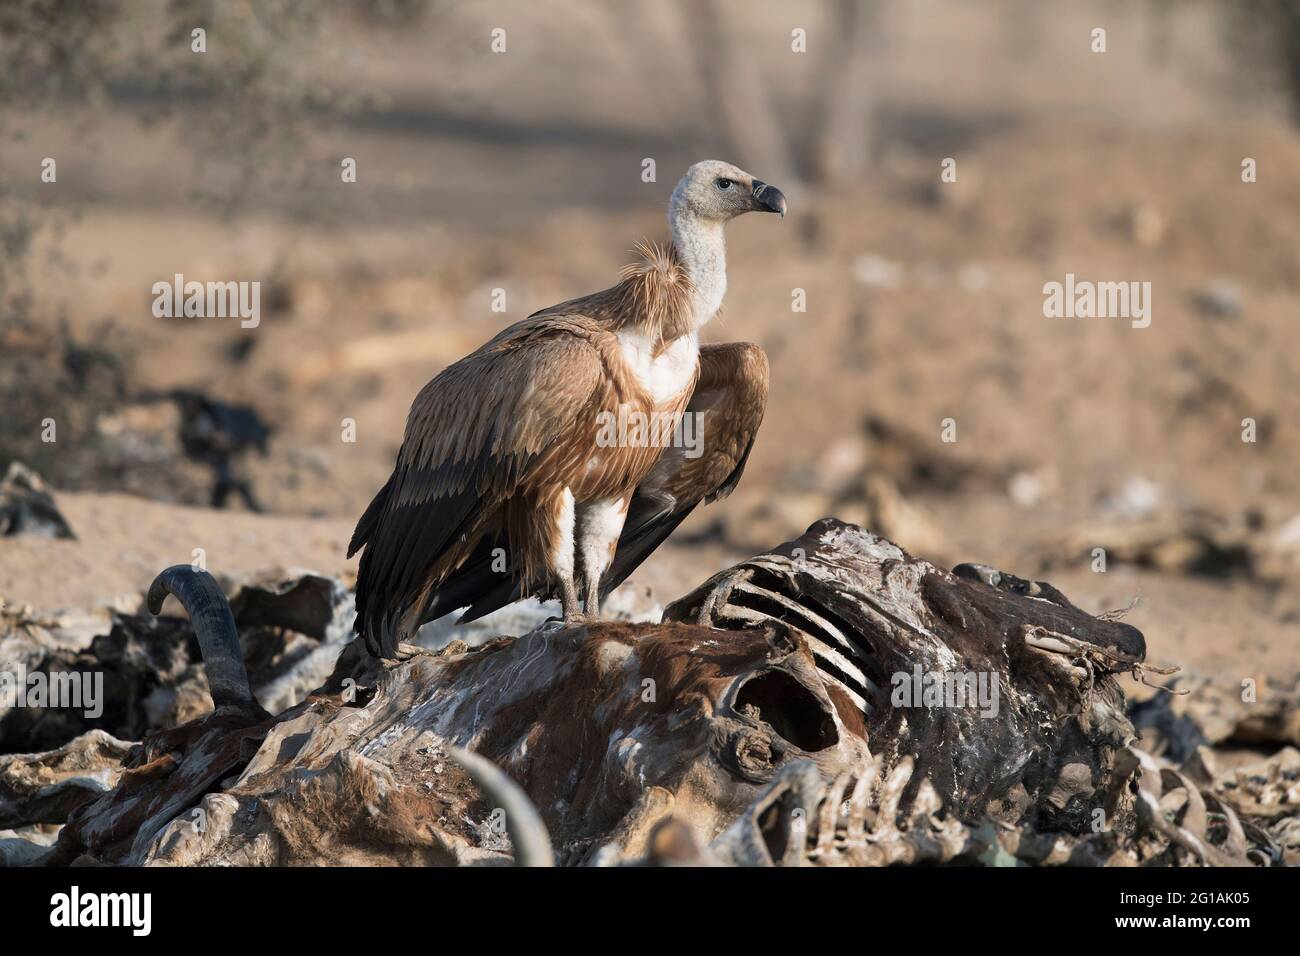 L'image de la vautour de Griffon (Gyps fulvus) sur la carcasse animale a été prise au Rajasthan, en Inde, en Asie Banque D'Images